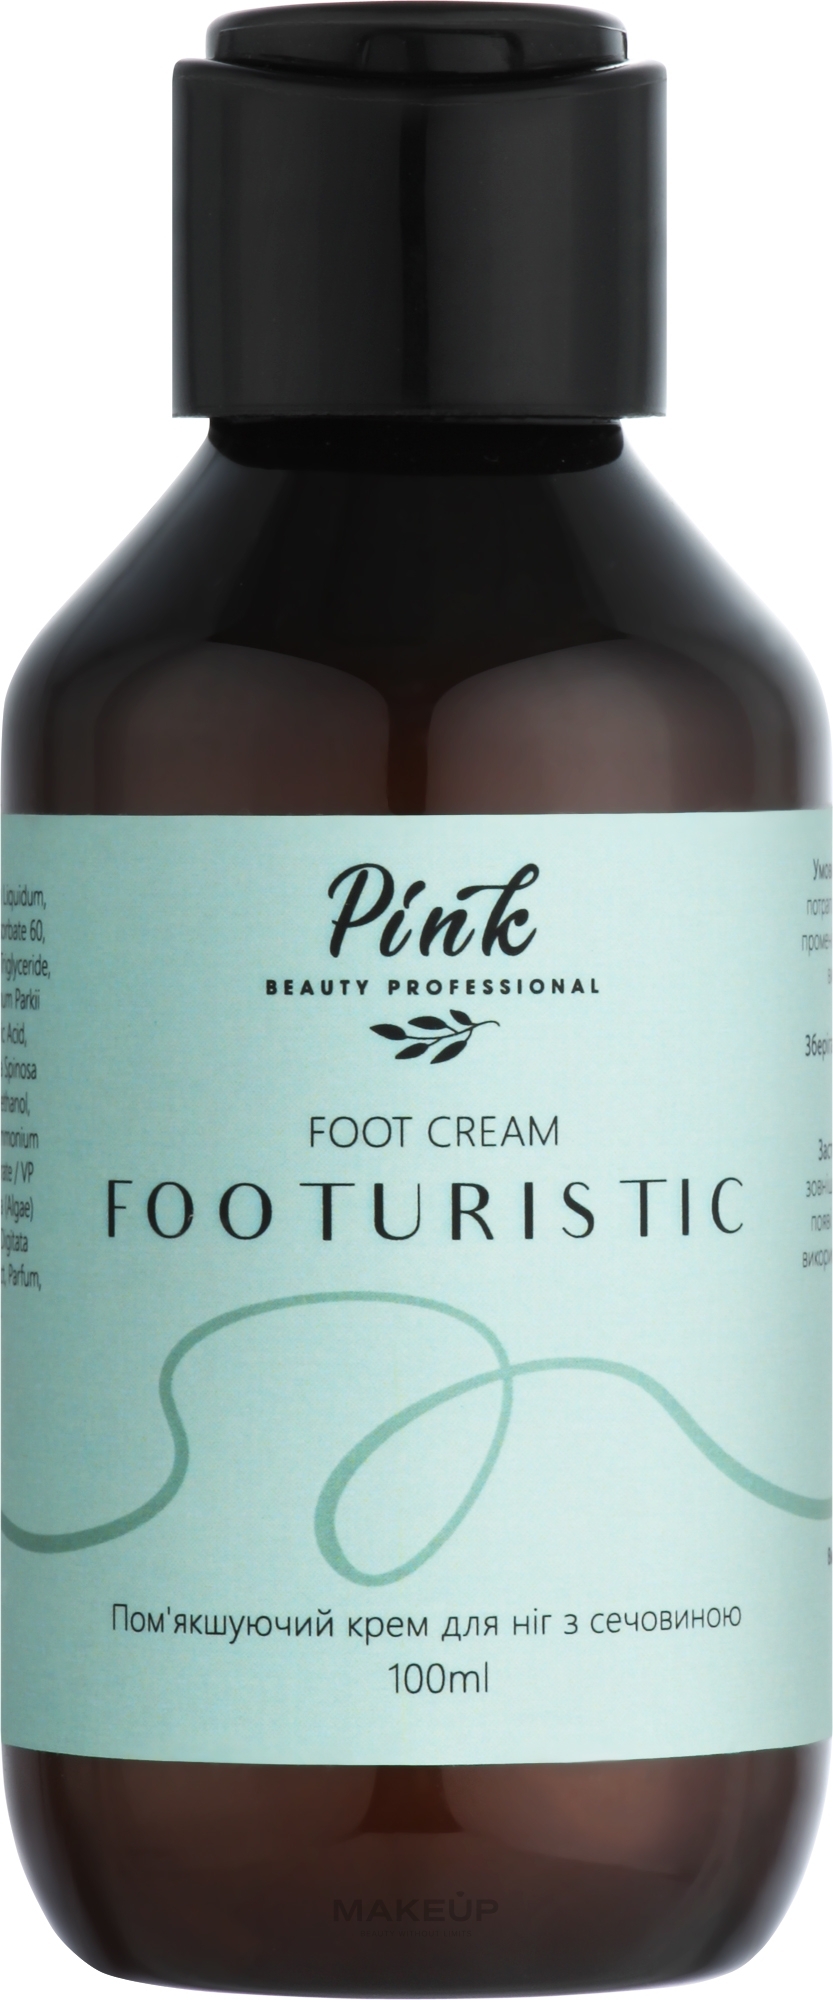 Крем для ніг з сечовиною "Footuristic" - Pink Foot Cream — фото 100ml